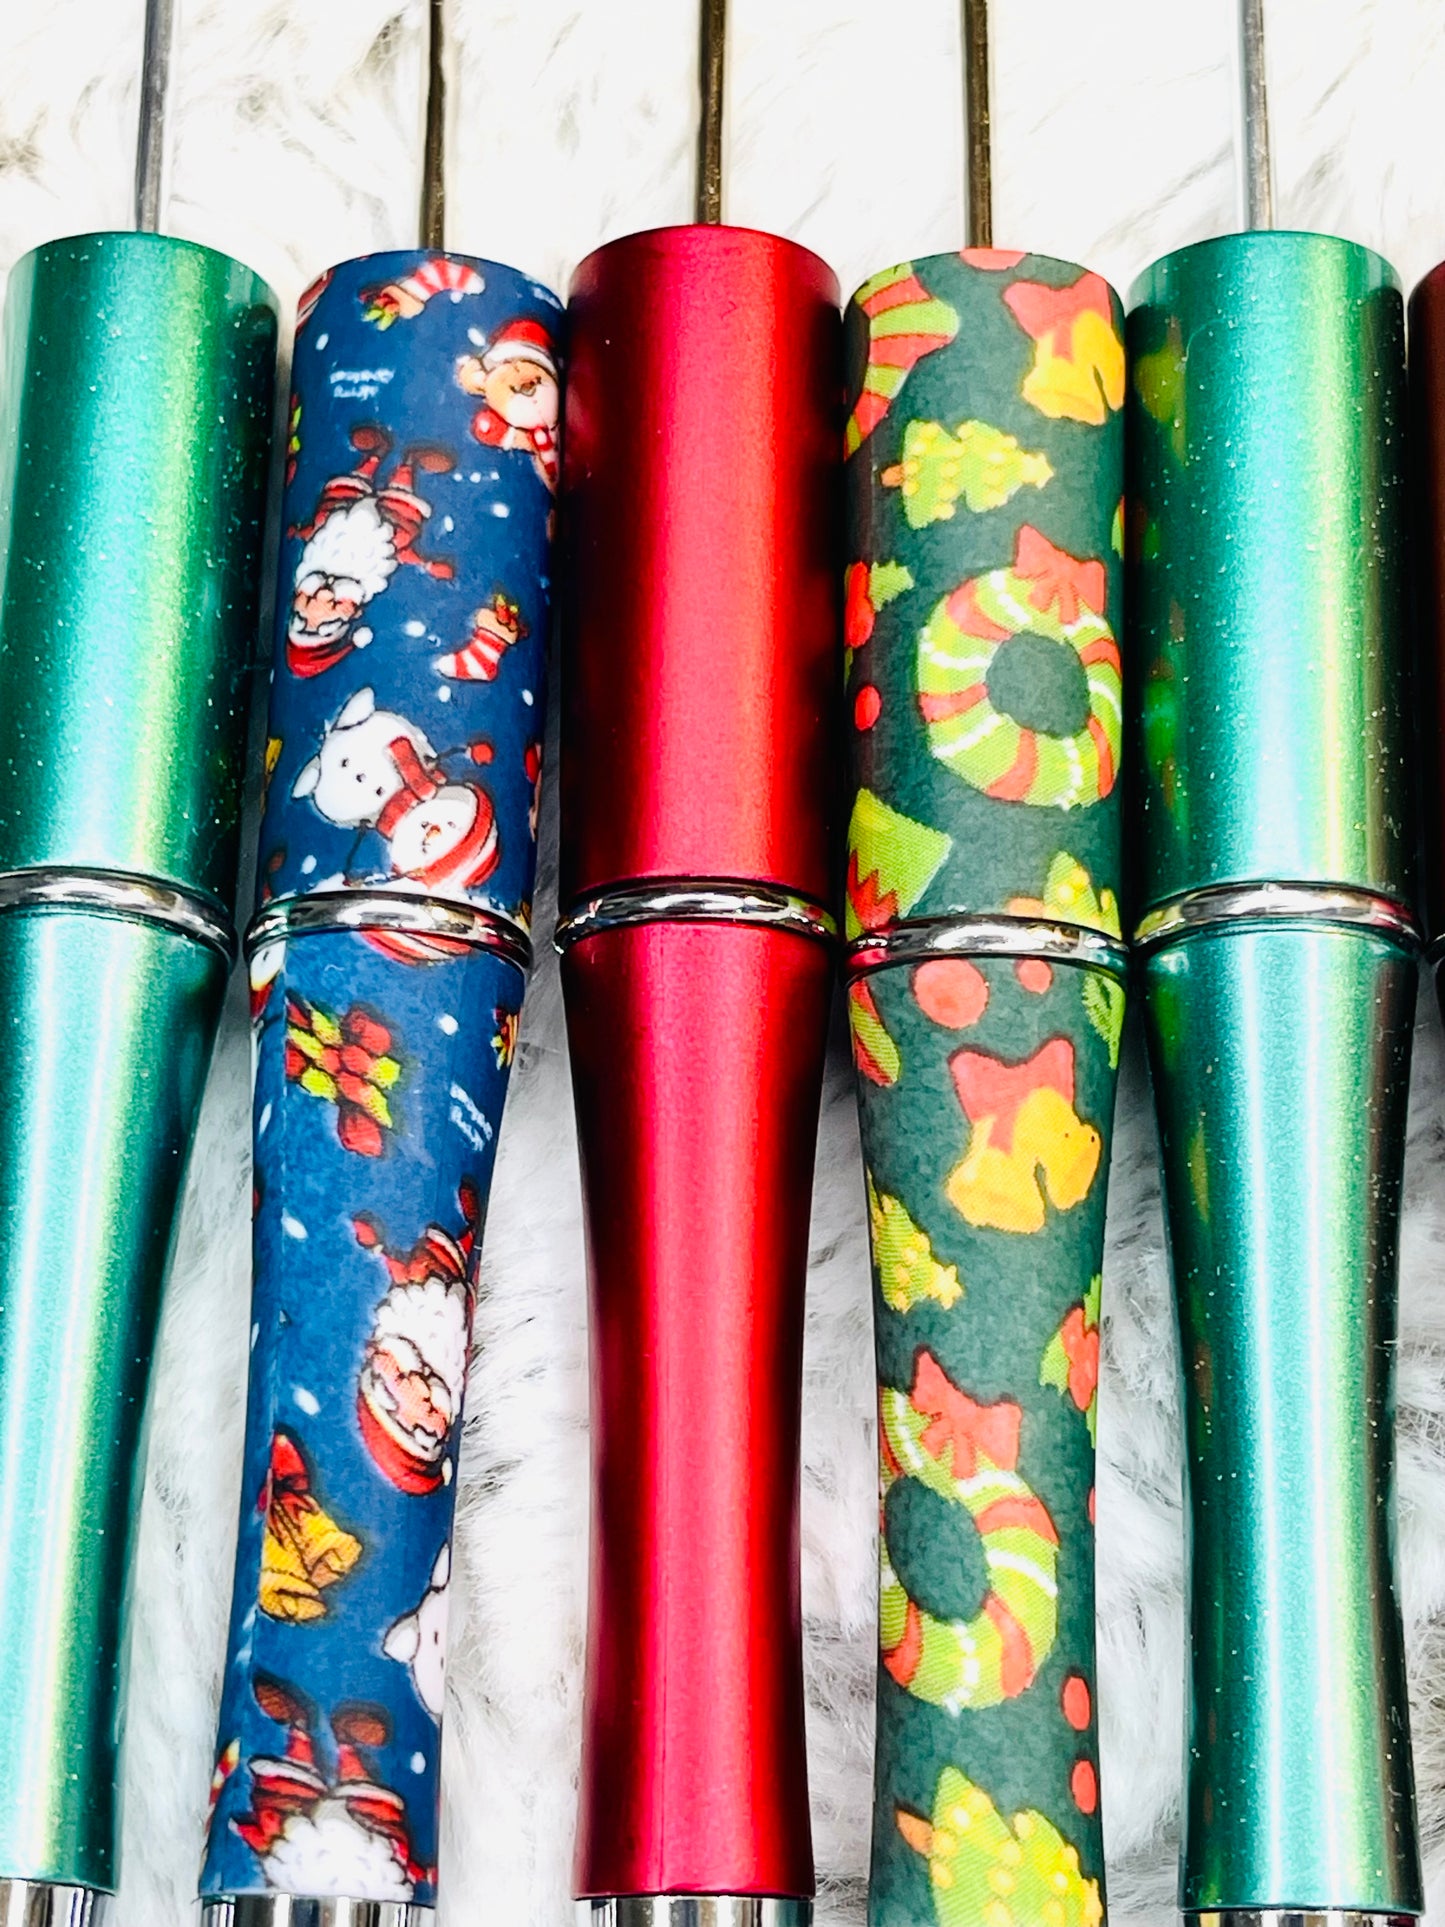 Holiday Themed Beadable Pens | 5 lot | Christmas Pens | Festive Pen Colors